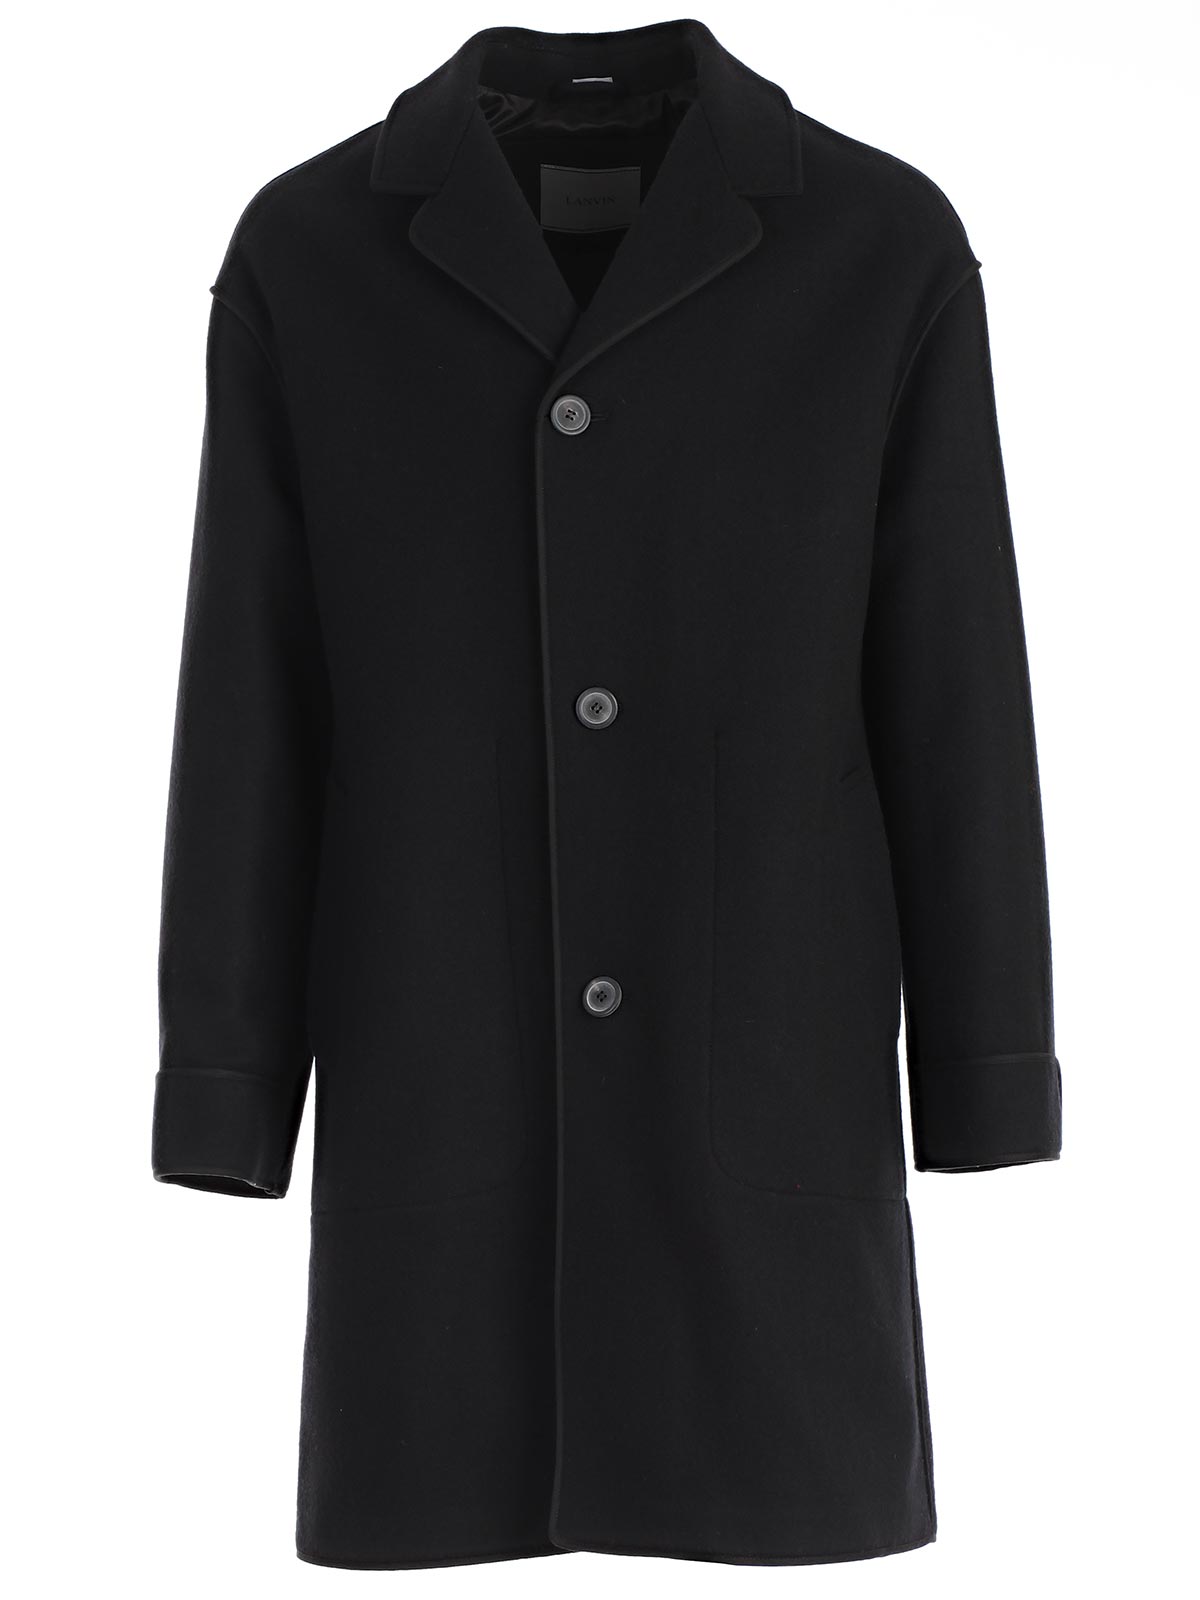 Lanvin Coat RMOU0003.A18 - 10 BLACK.Bernardelli Store - Online fashion ...